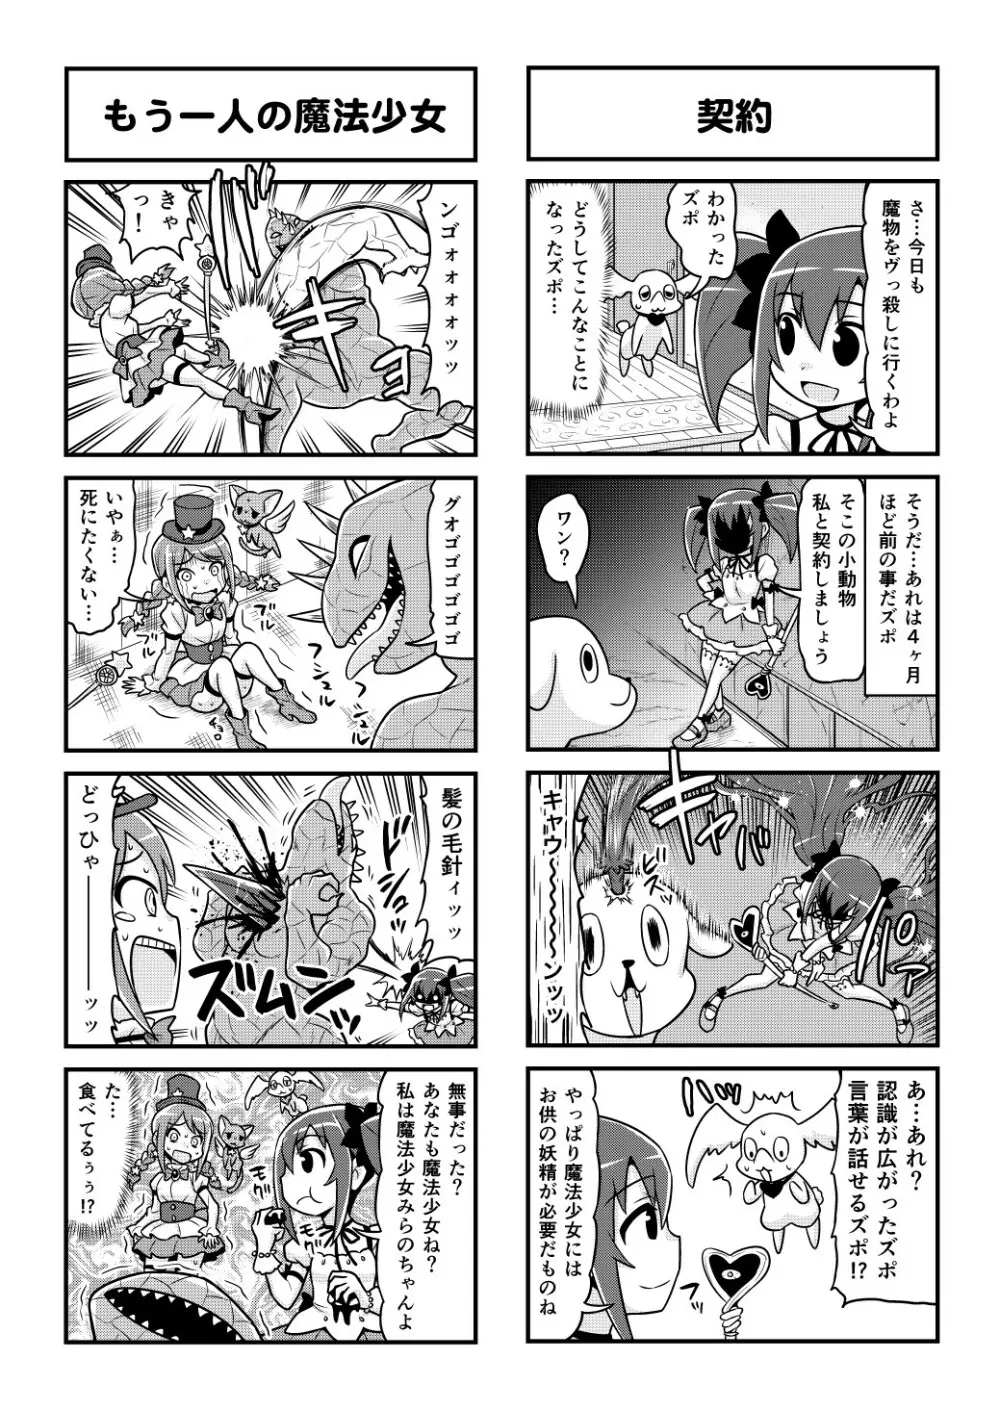 のんきBOY 1-52 - page383